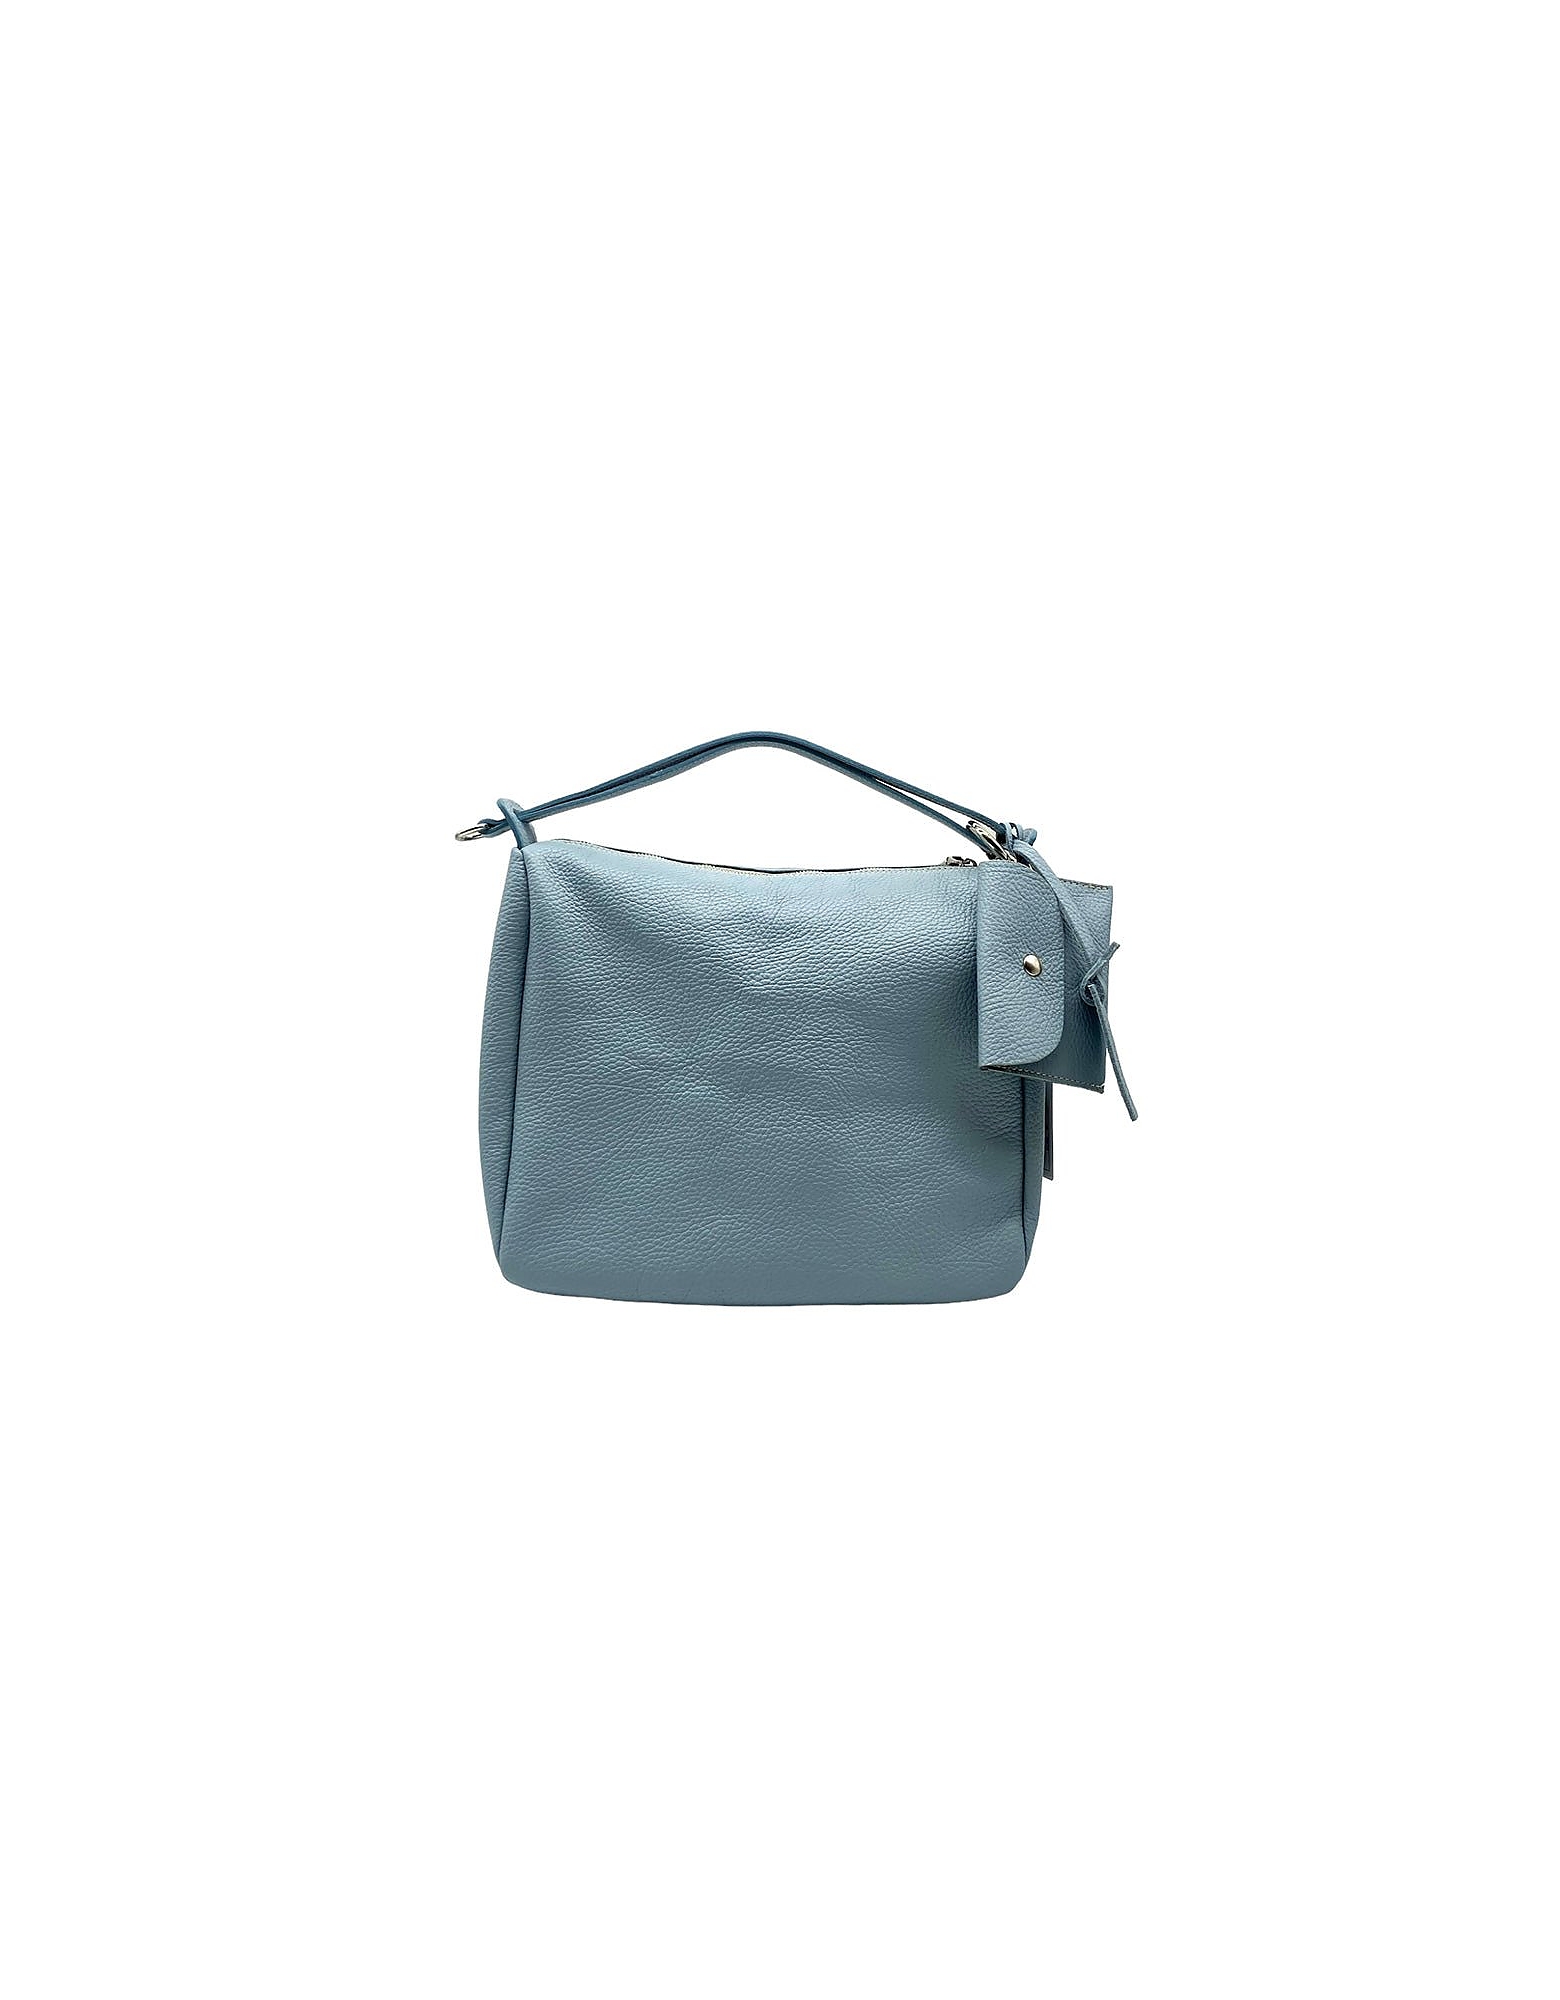 Marco Masi Designer Handbags 3397 - Top Handle Bag In Bleu